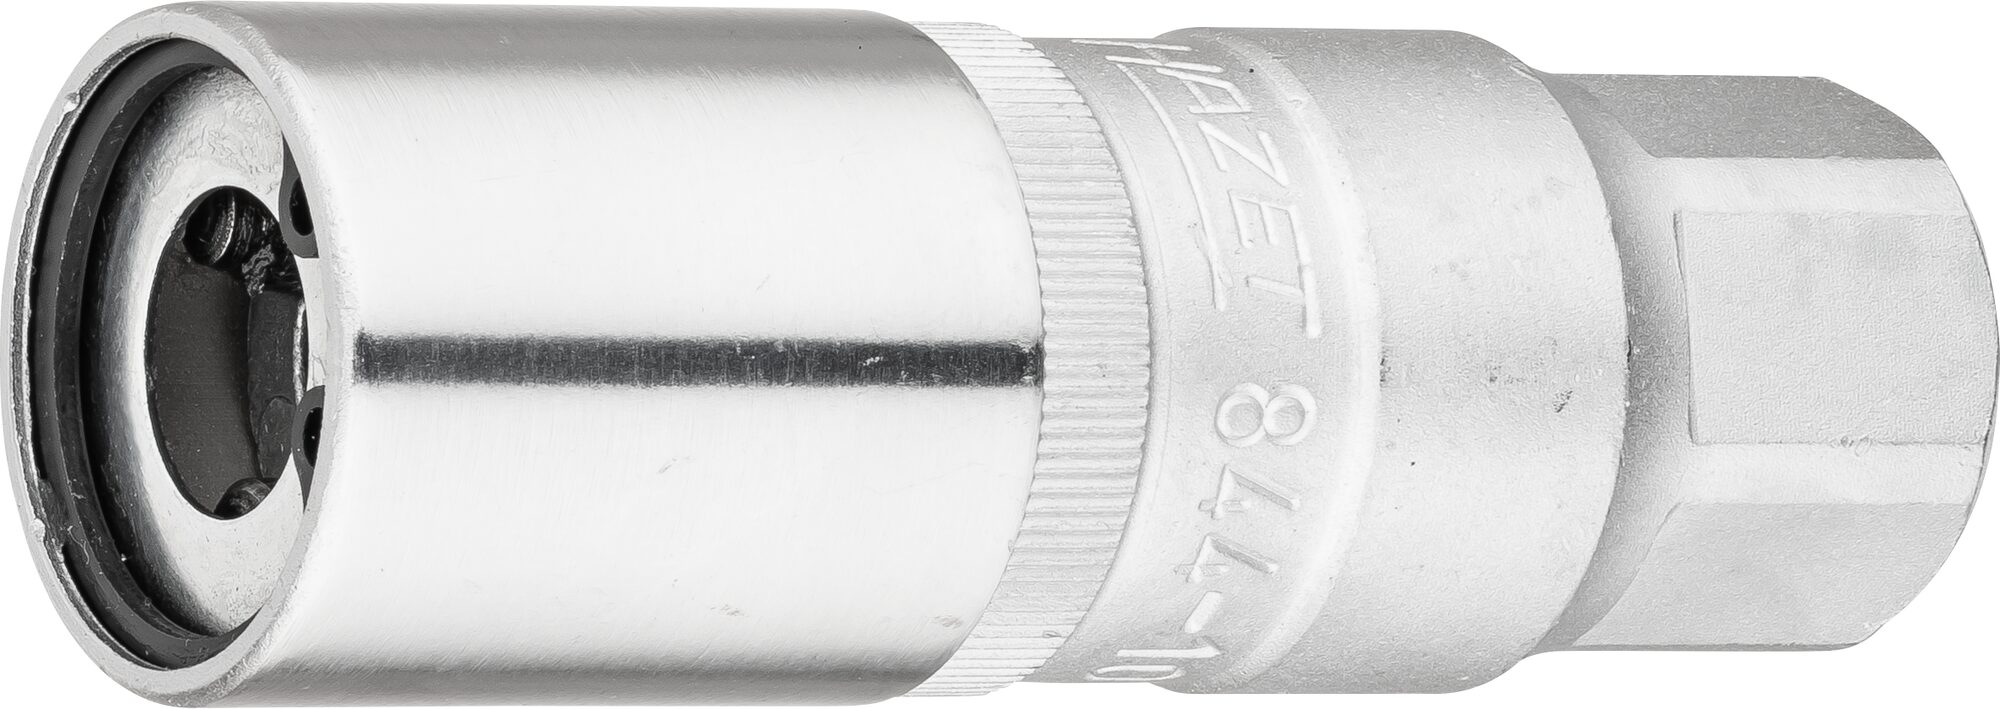 HAZET Stehbolzen-Ausdreher 844-10 · Vierkant hohl 12,5 mm (1/2 Zoll) · 27 mm